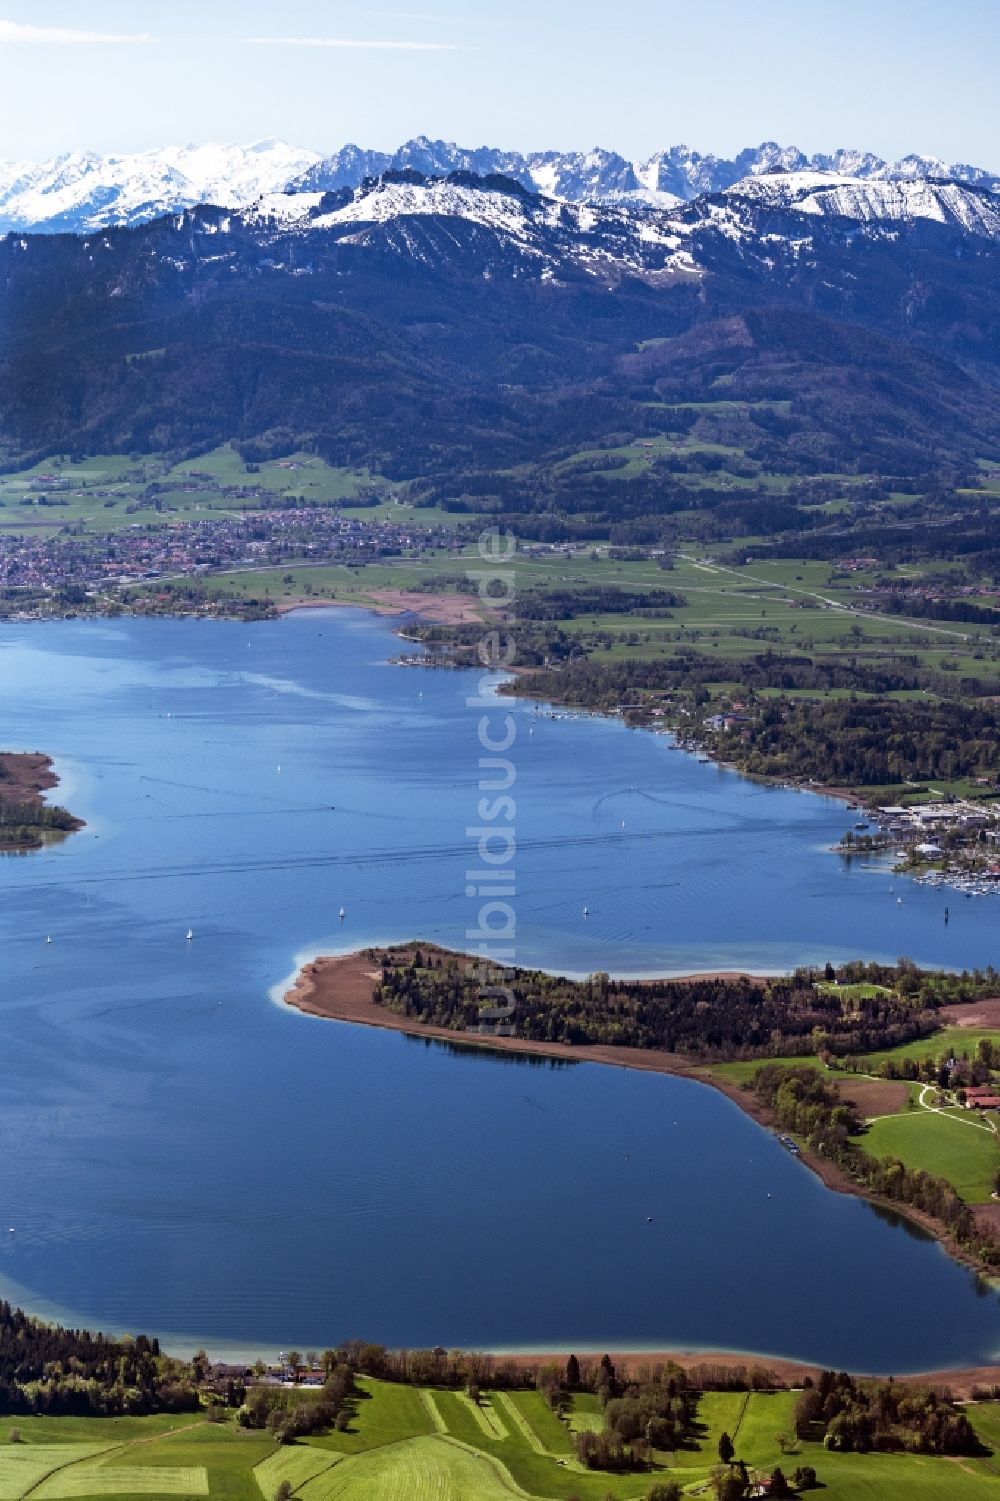 Luftbild Breitbrunn am Chiemsee - Halbinsel Sassau auf dem Chiemsee in Breitbrunn am Chiemsee im Bundesland Bayern, Deutschland